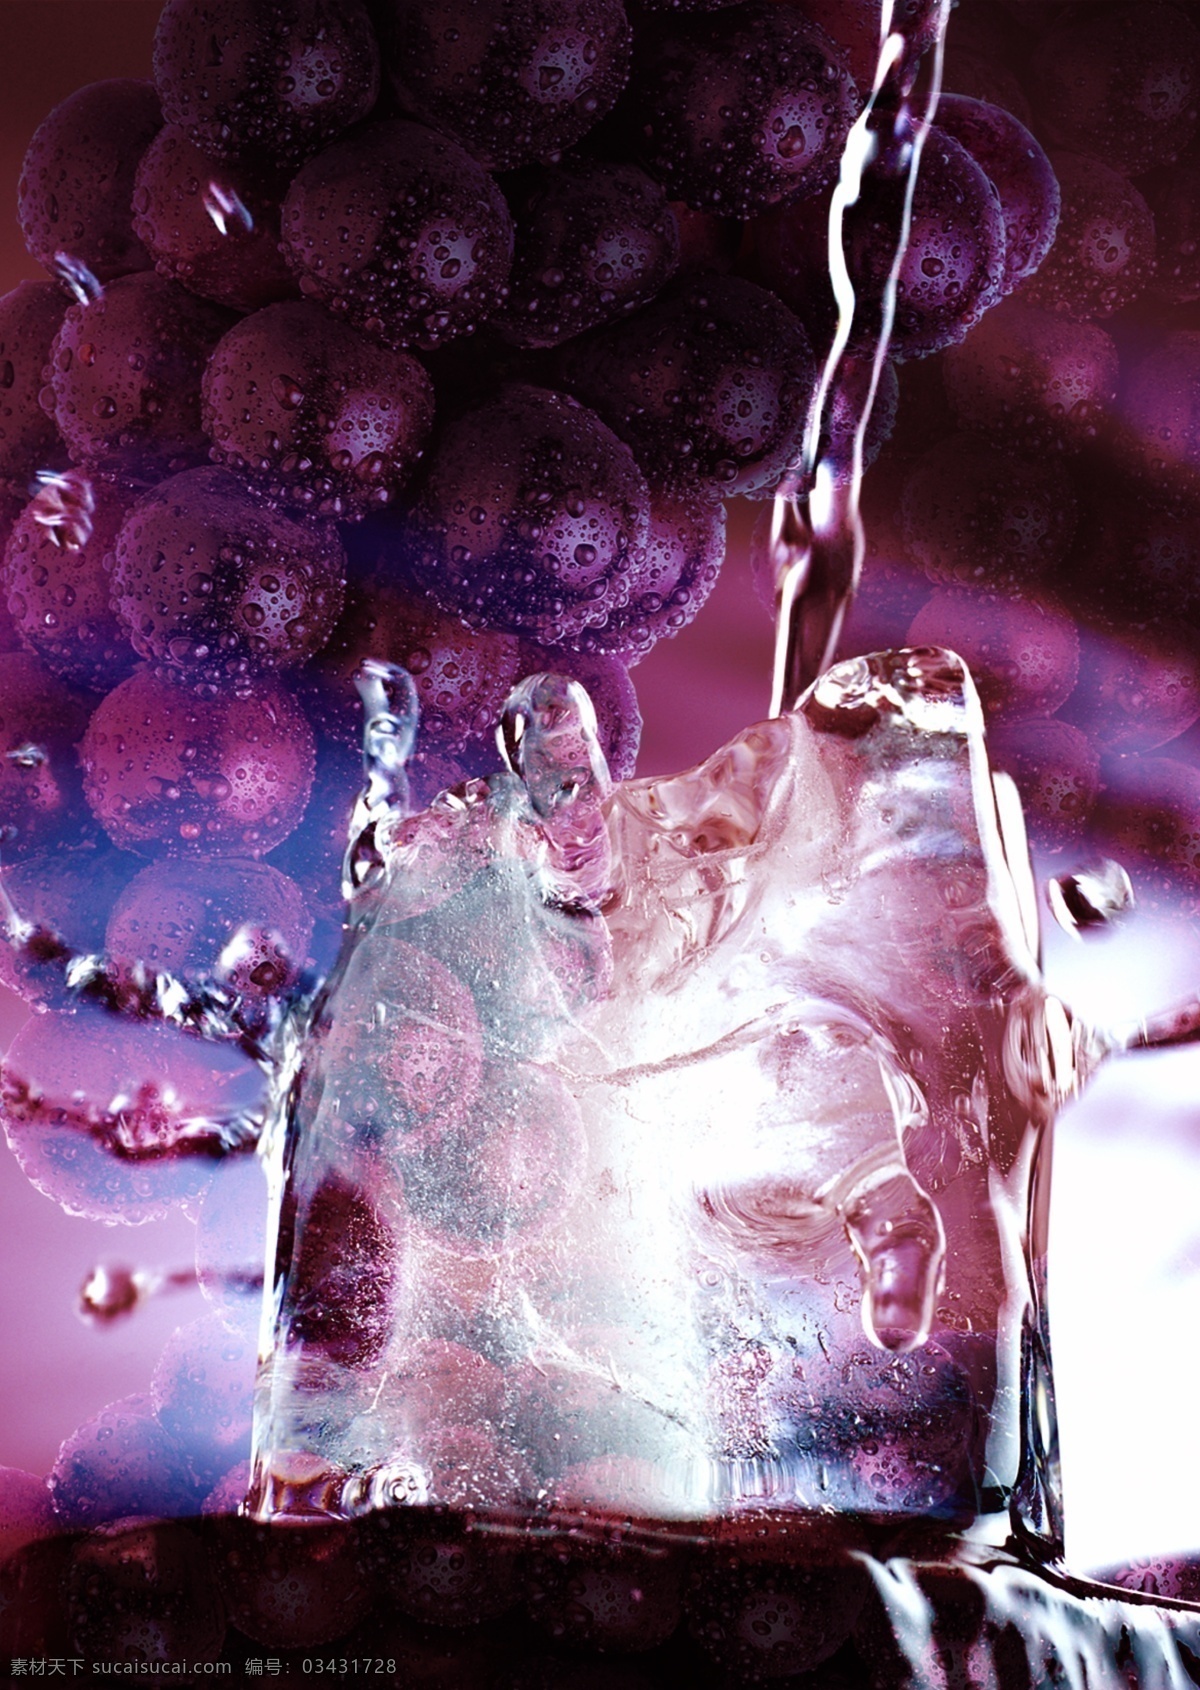 医疗 饮食 葡萄汁 研究分析 分层 冰水 科学实验 葡萄 水珠 样品分析 质检分析 饮食安全 调查检测分析 psd源文件